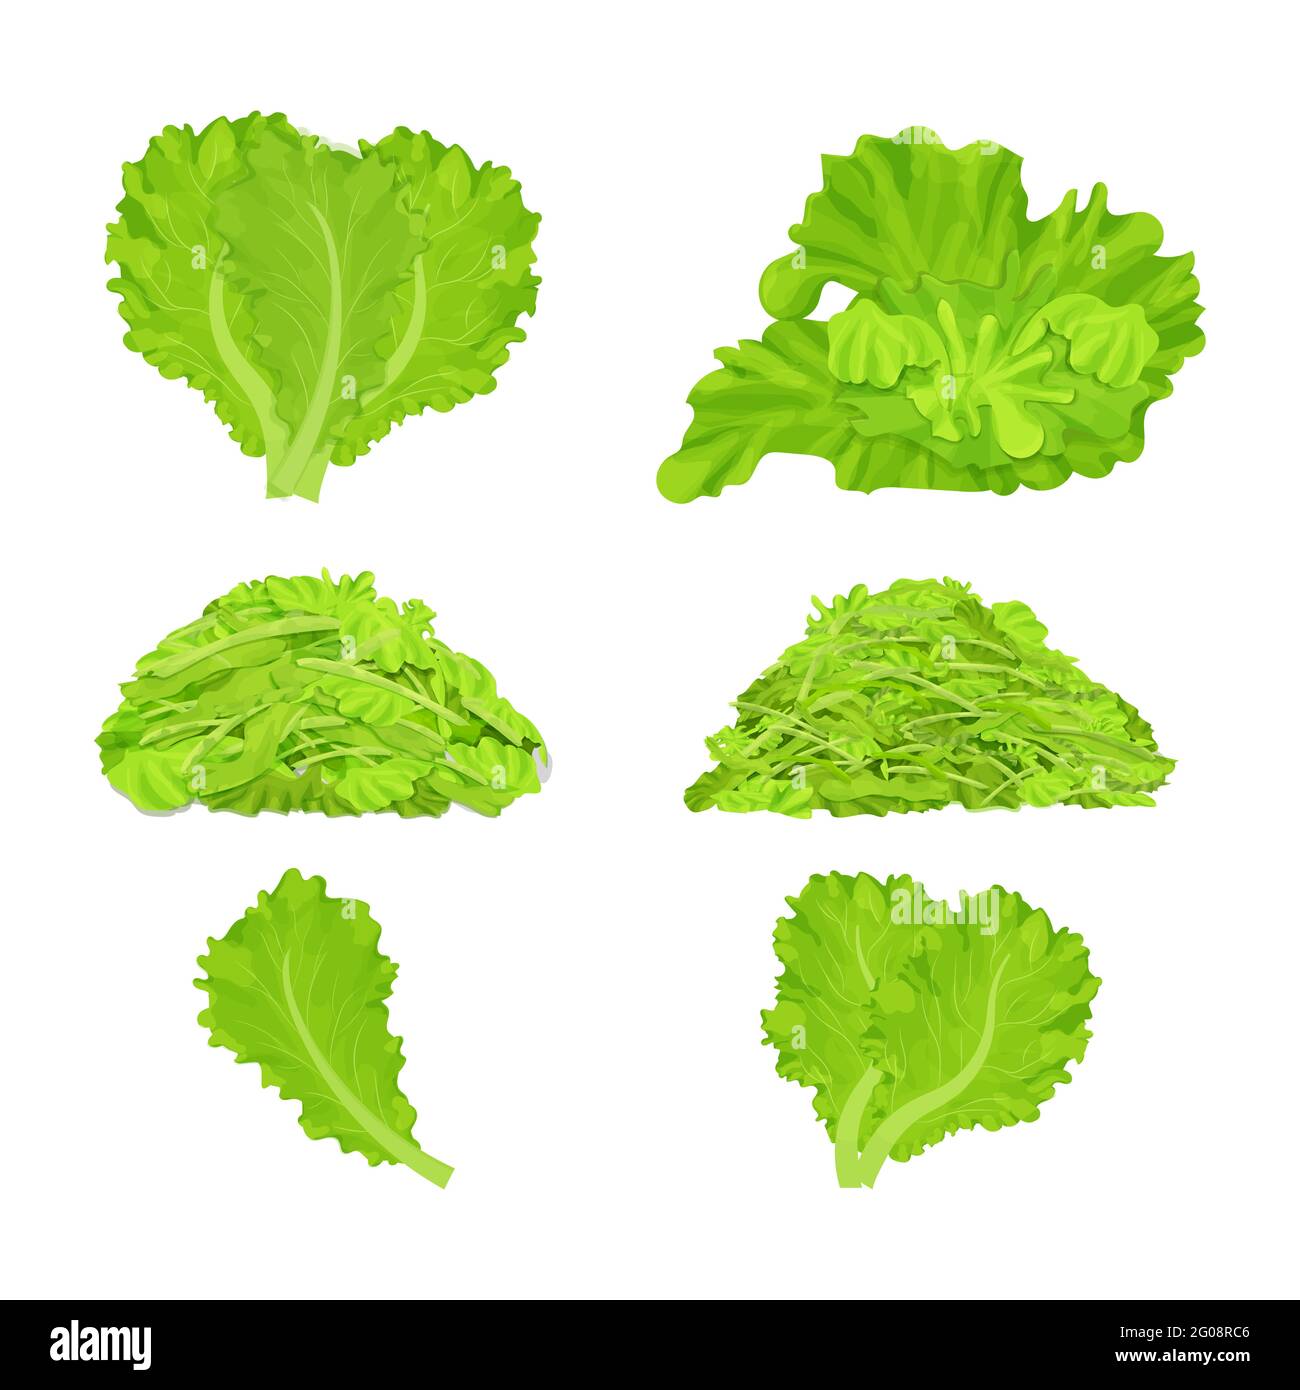 Set aus verschiedenen Salatblättern, geschreddert Haufen isoliert auf weißem Hintergrund. Realistische flache Cartoon-Stil, detaillierte, bunte Komposition Sammlung. Stock Vektor